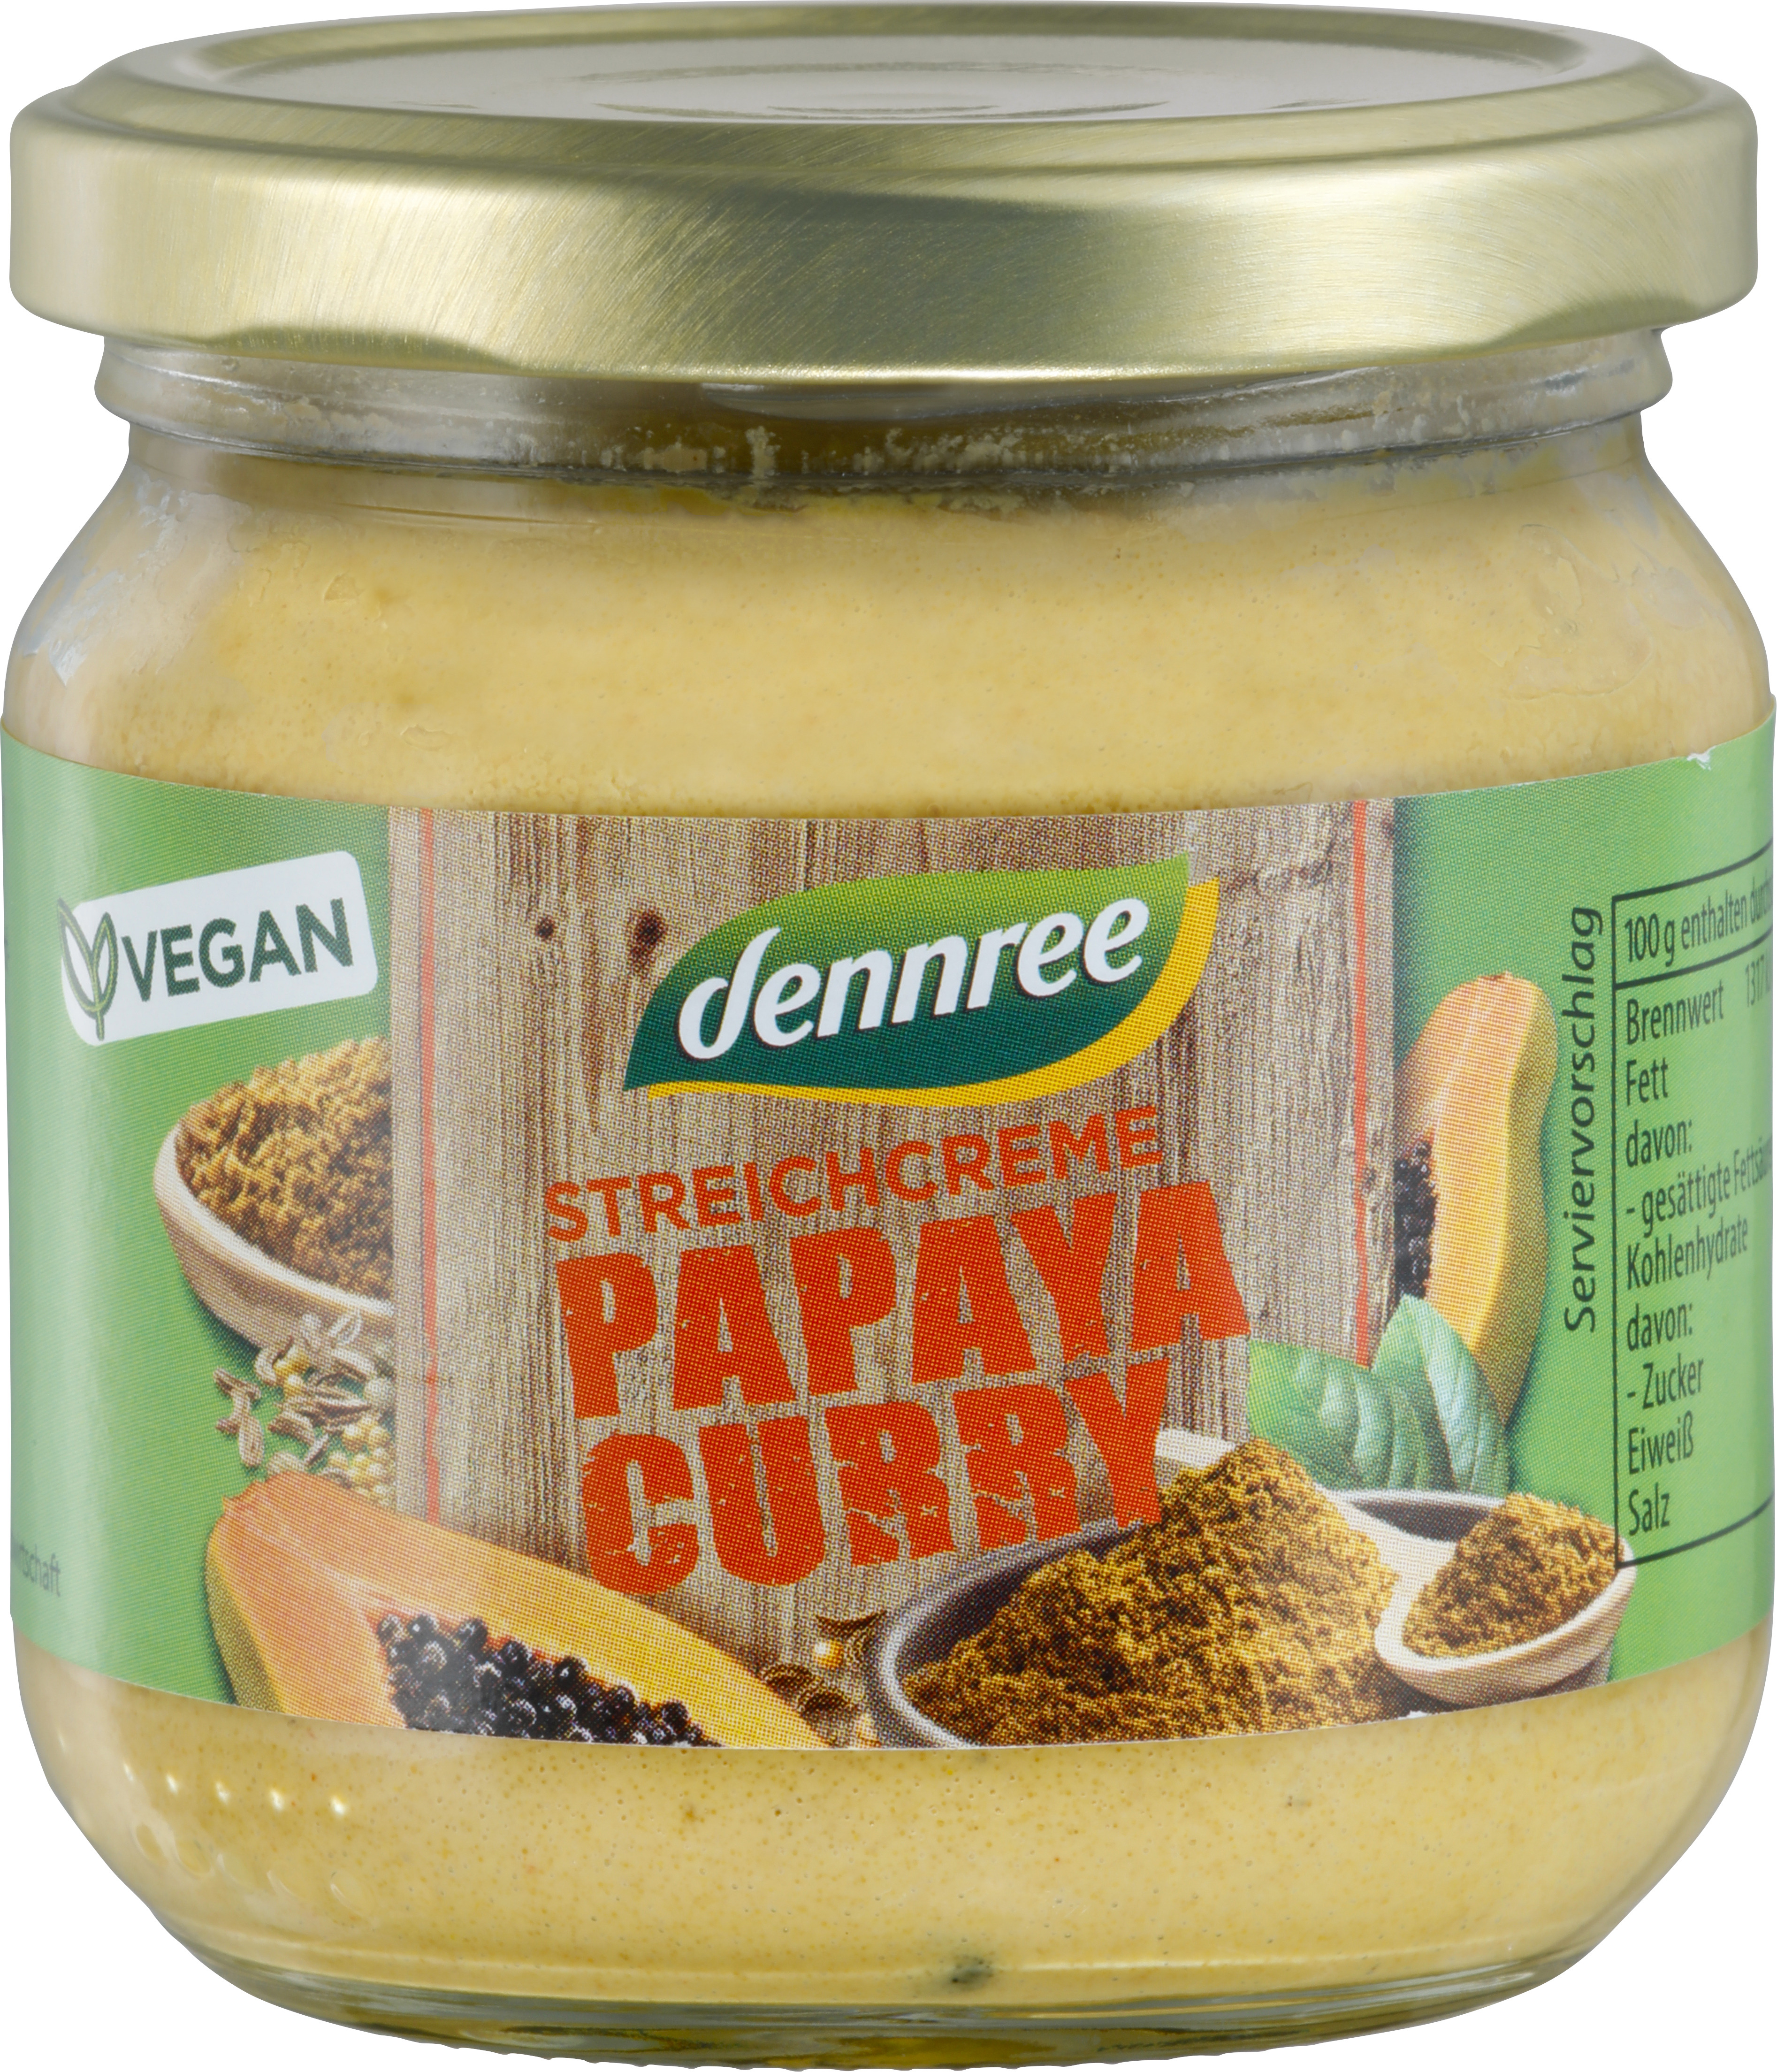 <h2>Crema tartinabila cu papaya si curry bio 180g Dennree</h2><p>Se poate consuma ca atare, intinsa pe o felie de paine sau in sosuri/salate.</p><p><strong>Ingrediente:</strong> seminte de floarea-soarelui *, papaya * (20%), ulei de floarea-soarelui *, apa, pulpa de mere *, otet de mere *, concentrat de suc de mere *, curry * (1,5%) (contine MUSTAR *), sare de mare, concentrat de suc de lamaie *, zahar brut de trestie *, condimente * (chimen negru *, coriandru *, boia *, MUSTAR *, chimen*).</p><p>*ingrediente din agricultura ecologica</p><p><strong>Valori nutritionale/100g:</strong><br />Energie: 1350kj / 327 kcal<br />Grasimi: 31g din care saturate 3.6g<br />Carbohidrati: 5.2g din care zaharuri 5.2g<br />Proteine: 4.8g<br />Saruri: 1.4g</p><p>Dupa deschidere pastrati la frigider si consumati in maxim 5 zile.</p><p>Produs 100% vegan, ecologic</p><p>180g</p>